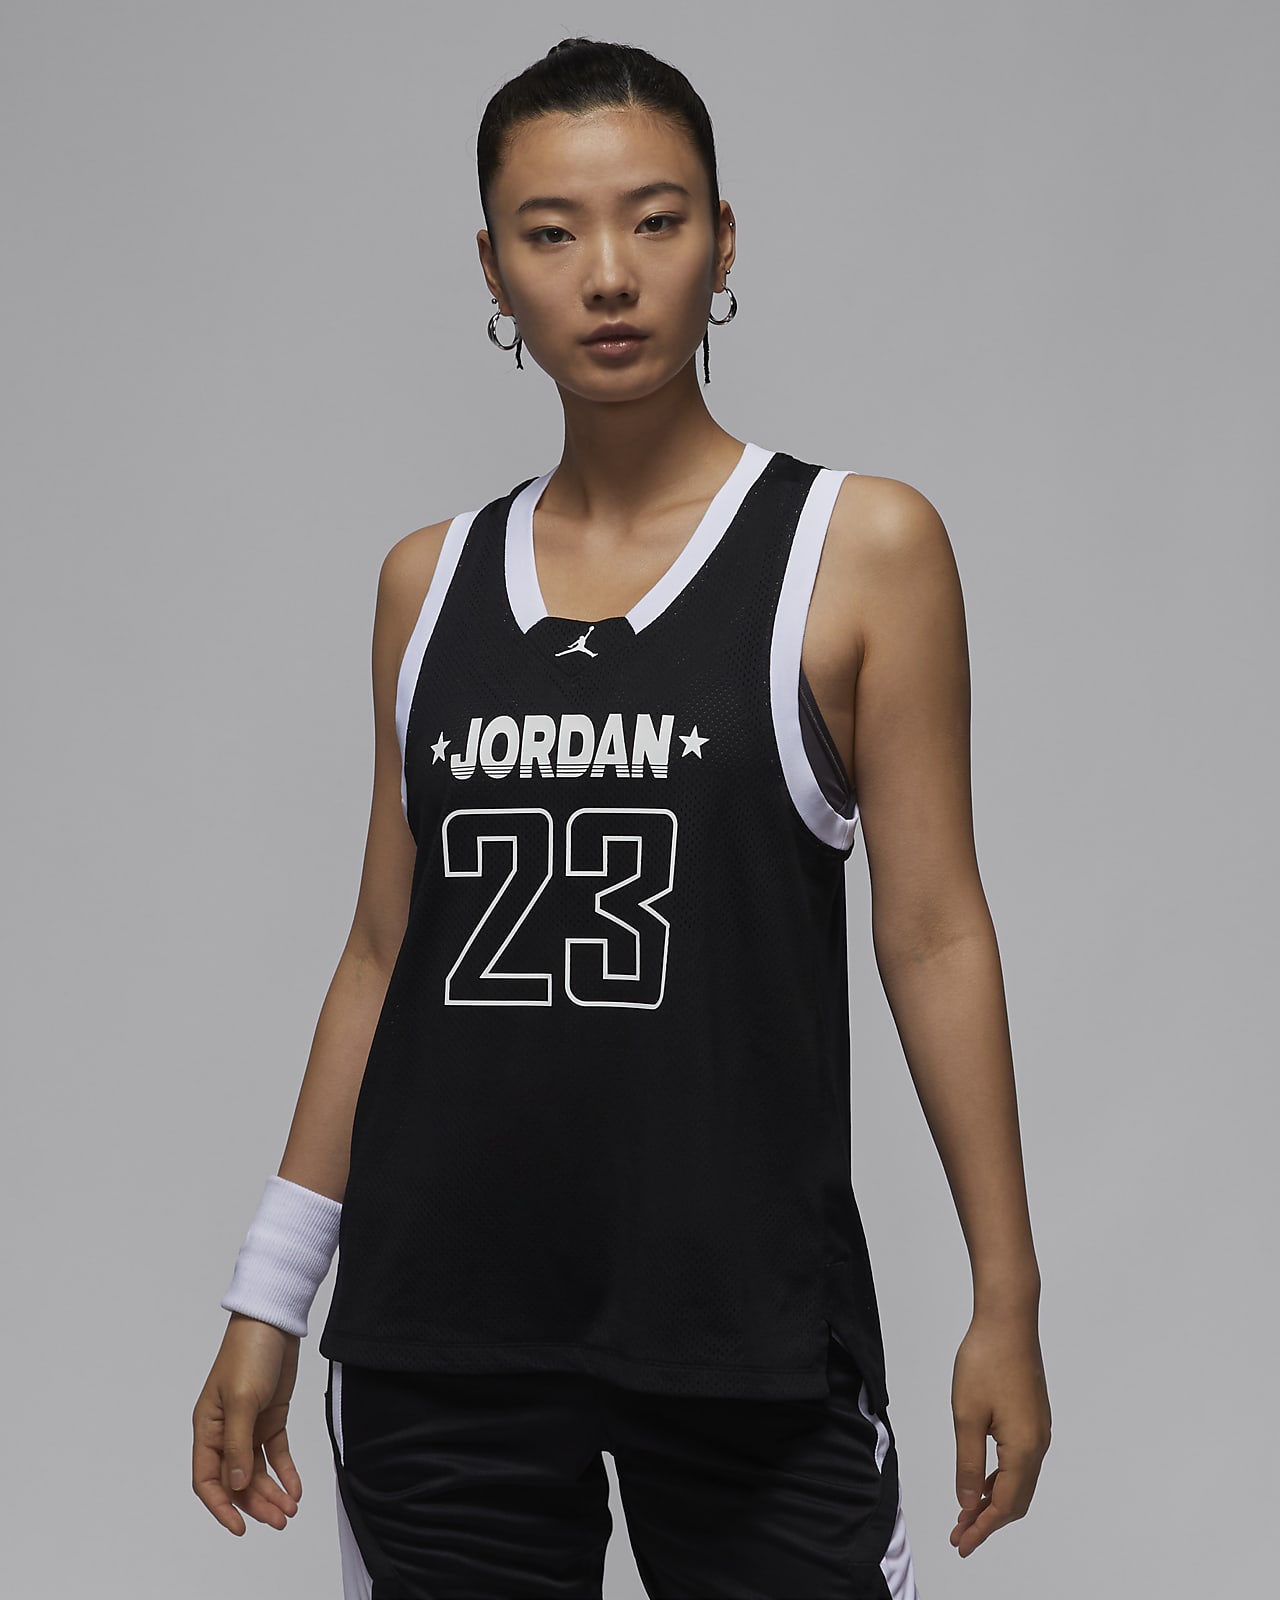 Jordan 23 Jersey Women's Tank